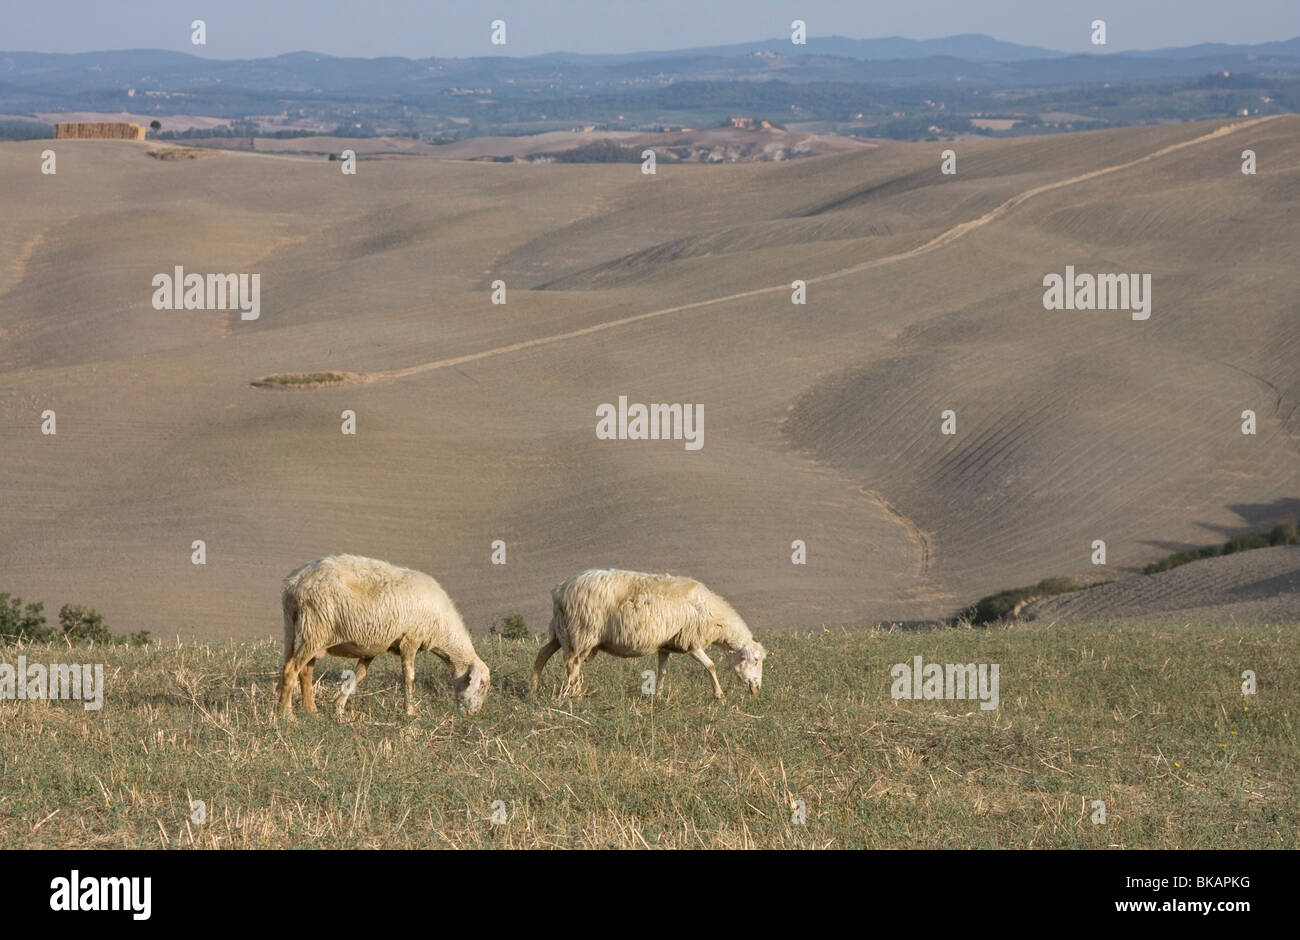 Sheep in Tuscany, Italy Stock Photo